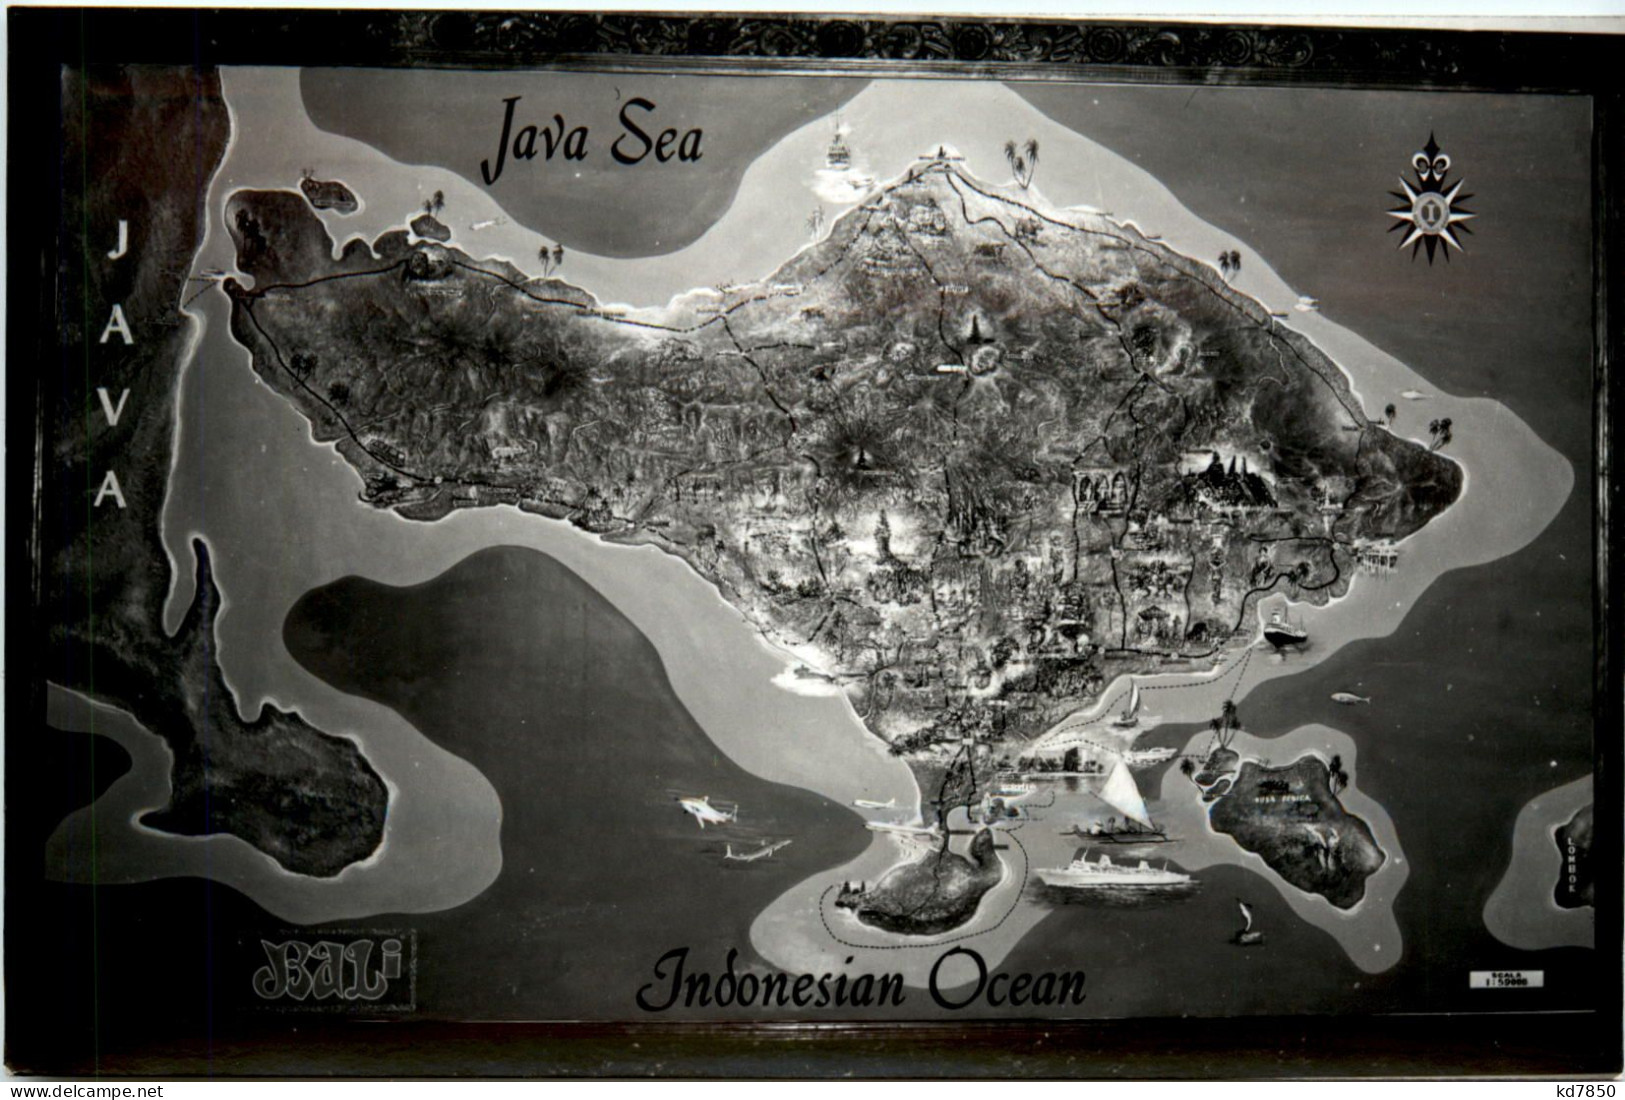 Java Sea - Indonesia